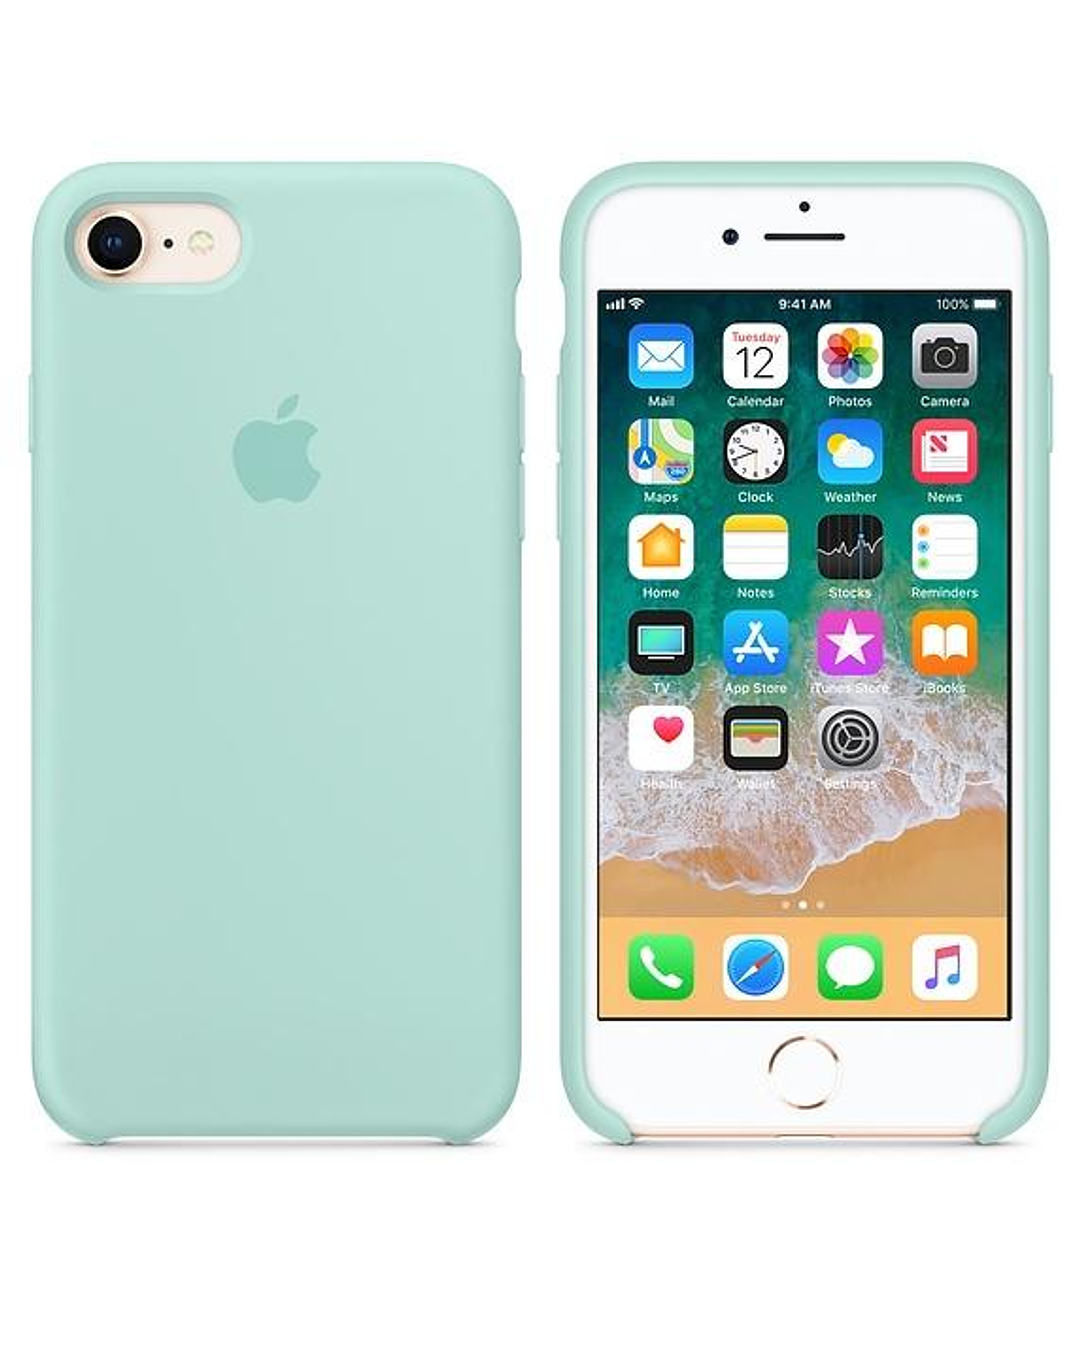 Carcasa para iPhone SE (2020), 7 y 8, color verde oliva oscuro